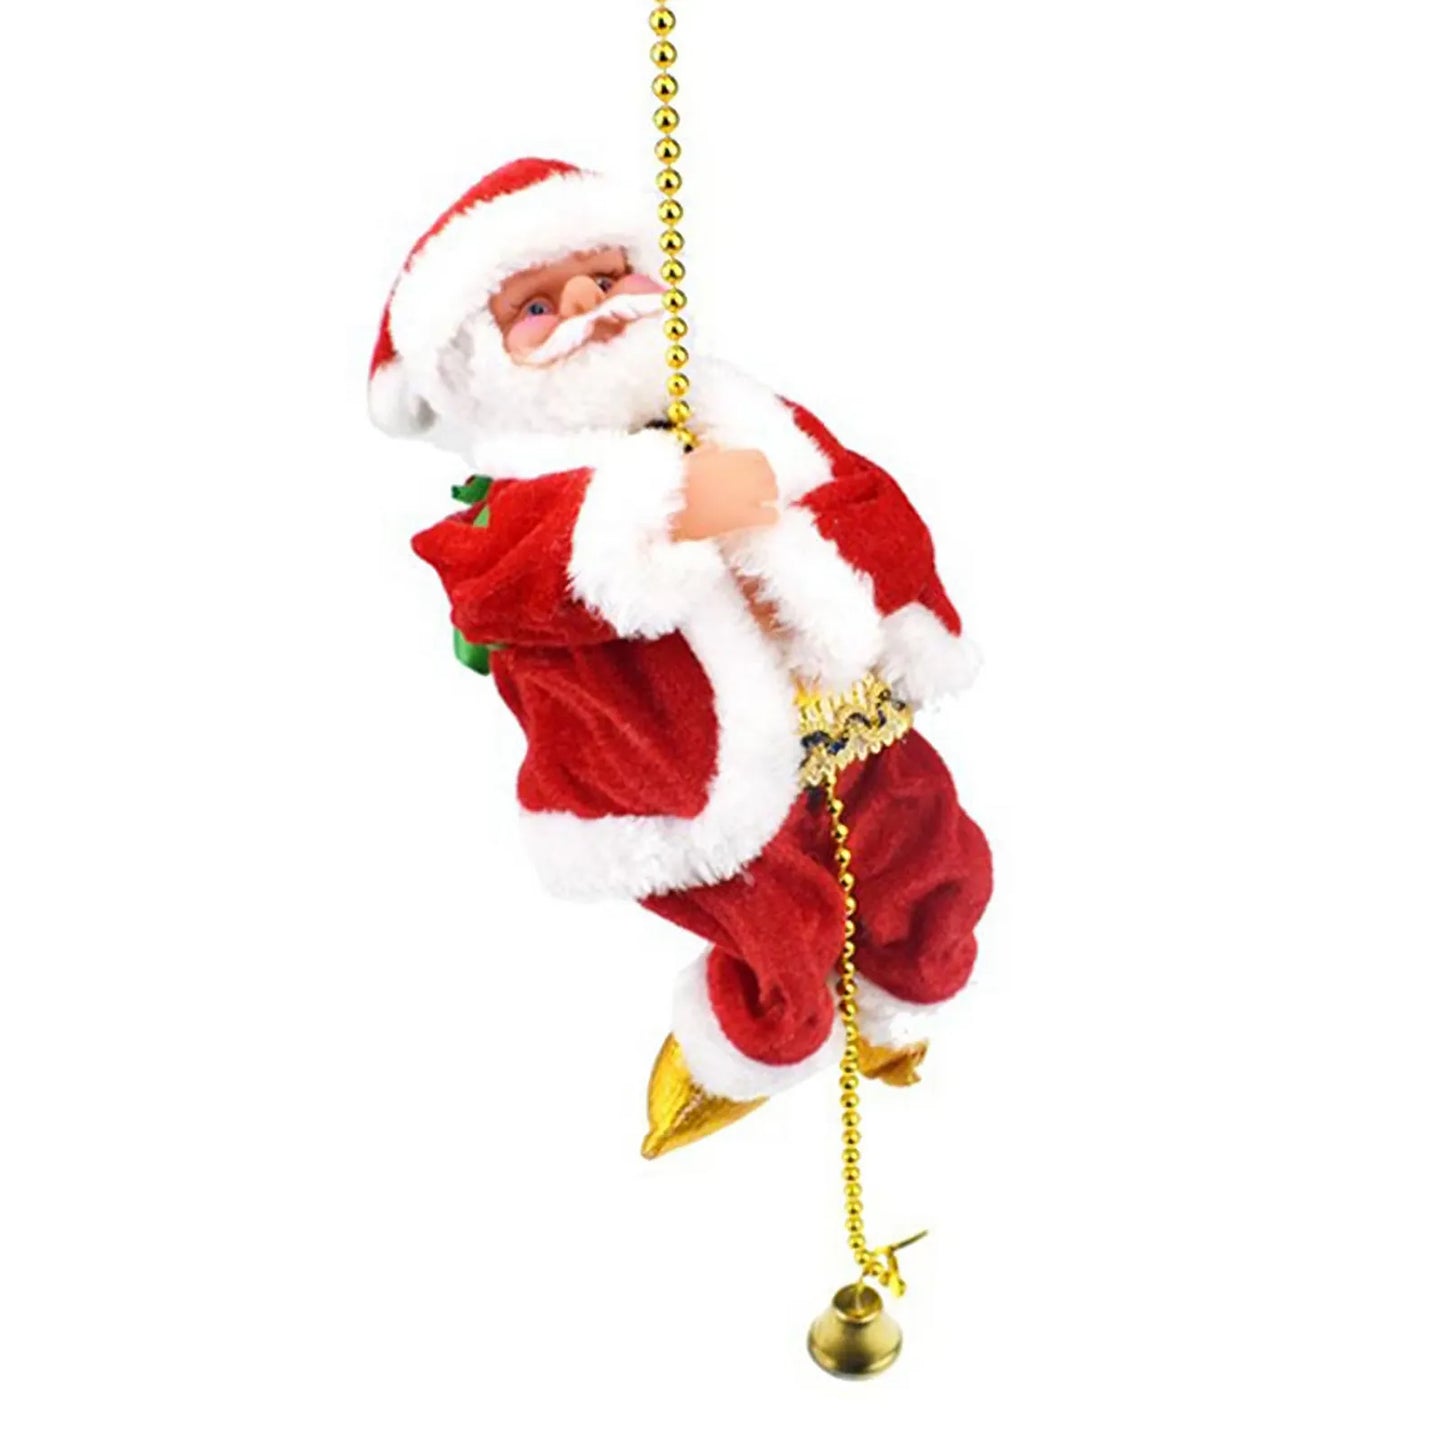 Elektrischer Kletter-Weihnachtsmann: Festlicher, batteriebetriebener Weihnachtsschmuck